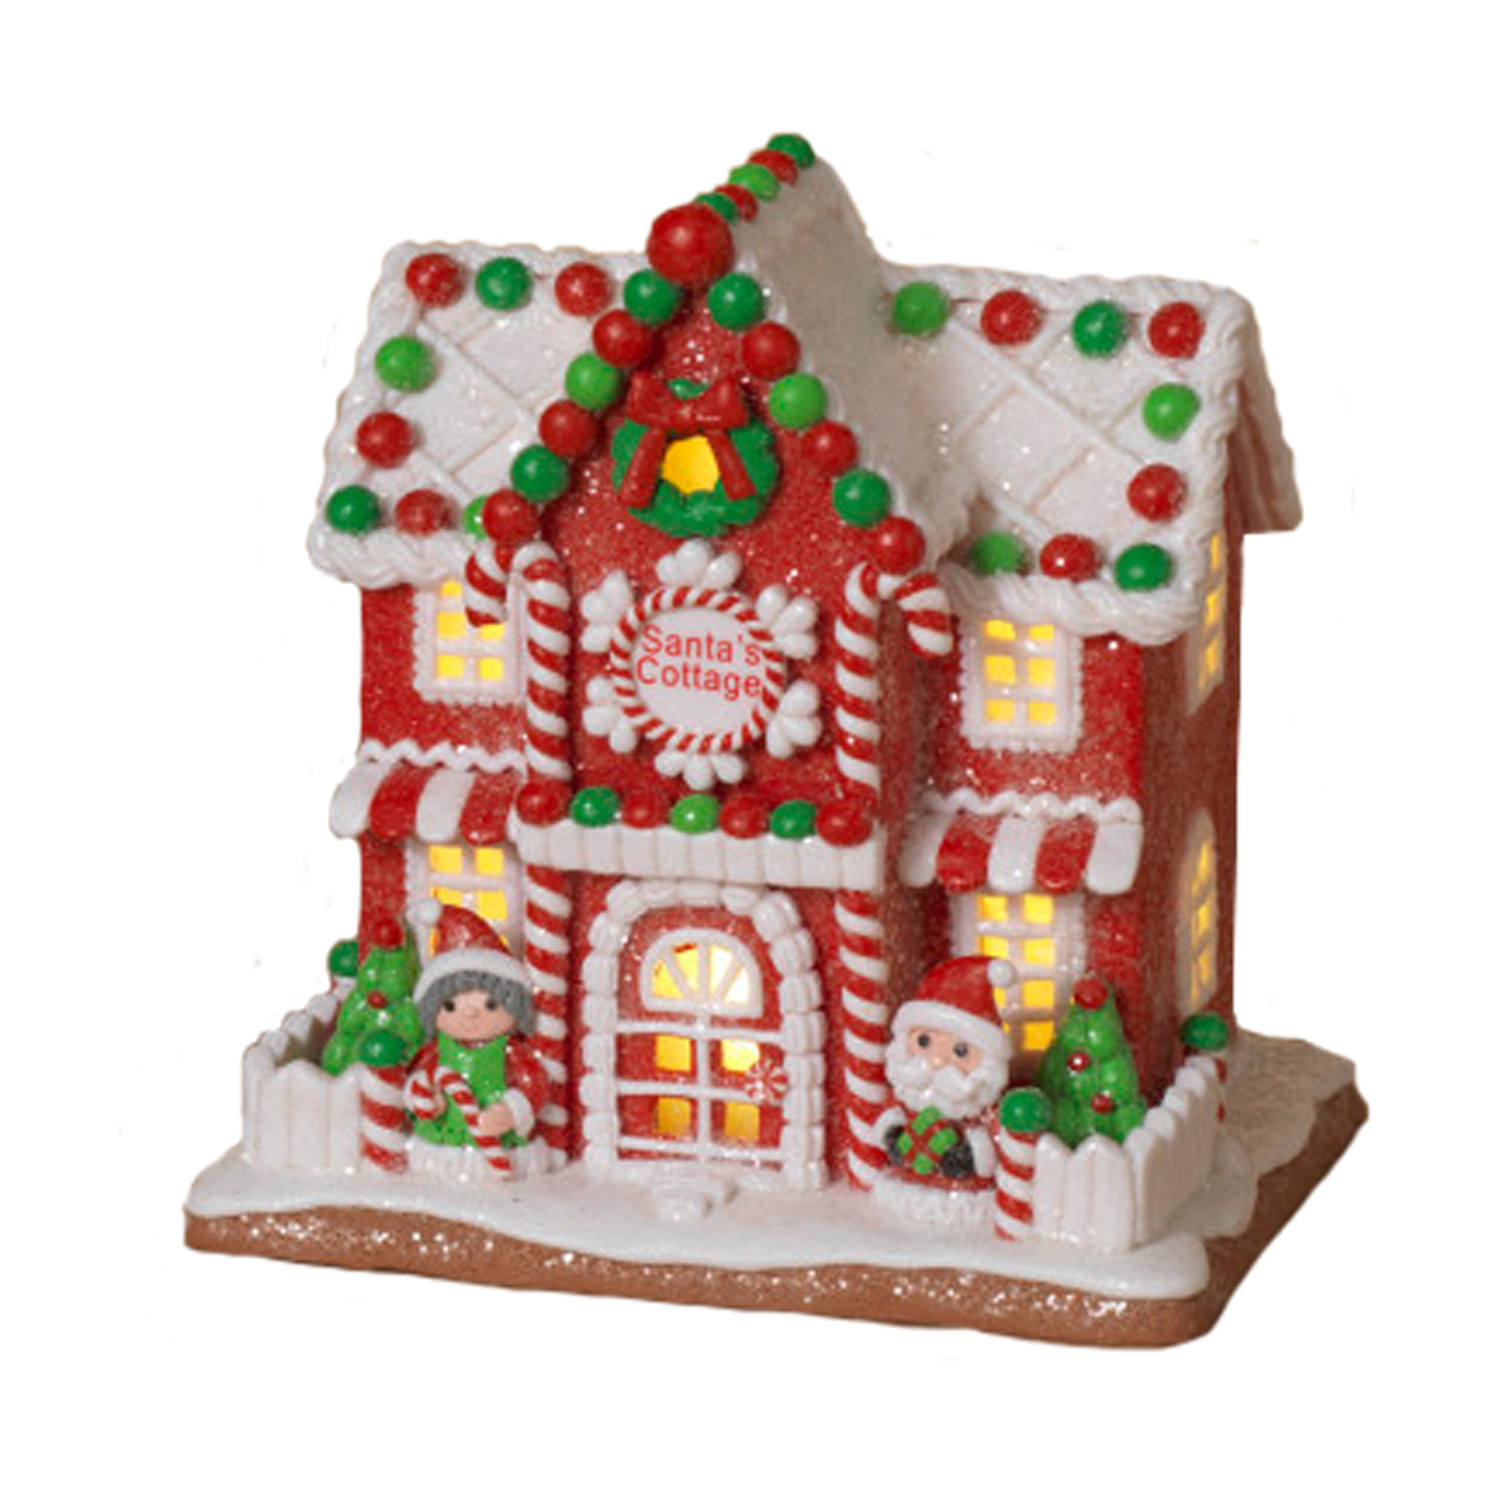 Bonhomme de pain d'épices de Noel : Gingerbread man - La Casbah des Delices